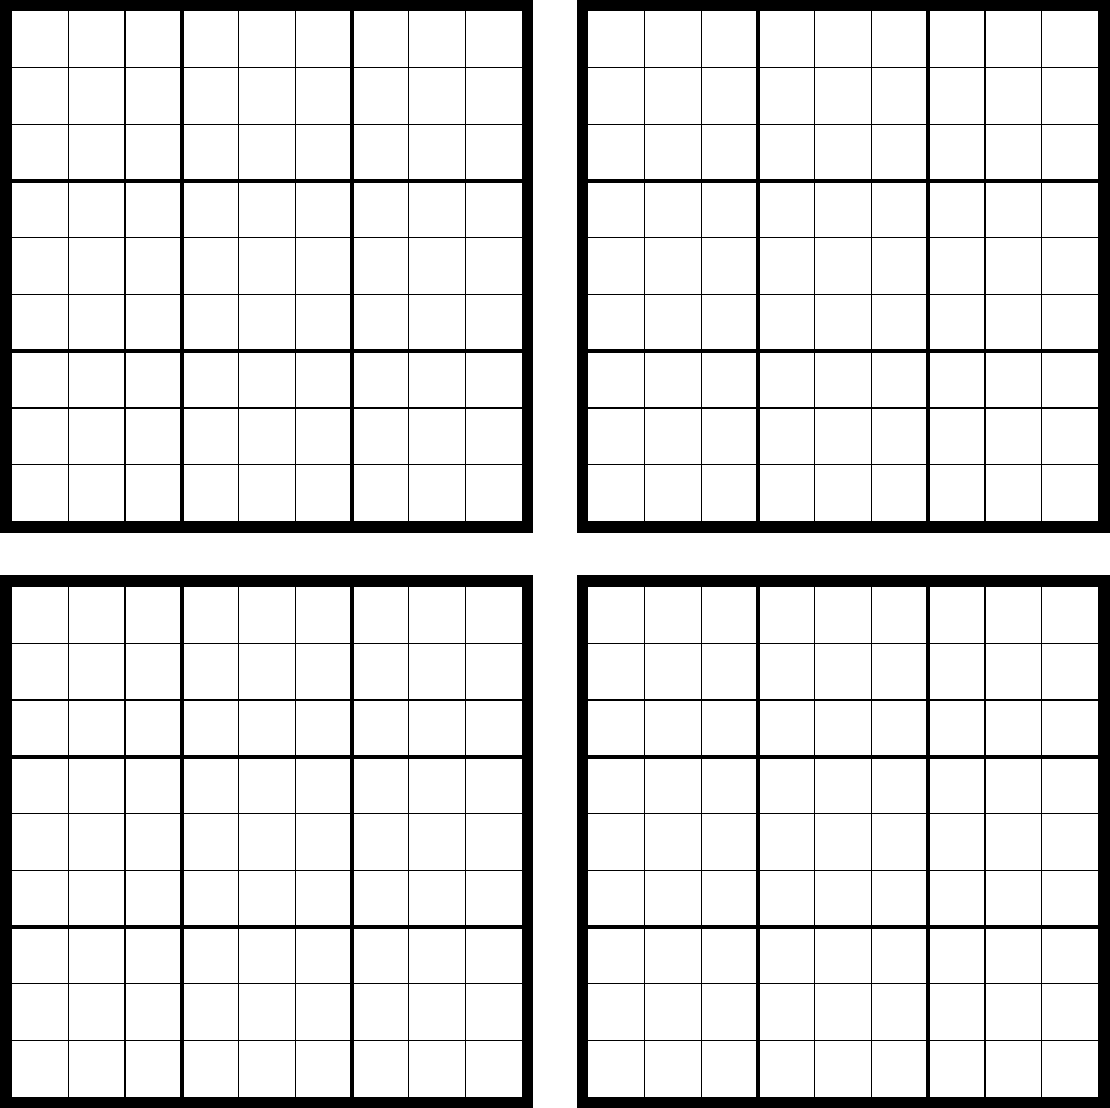 Sudoku Template Printable